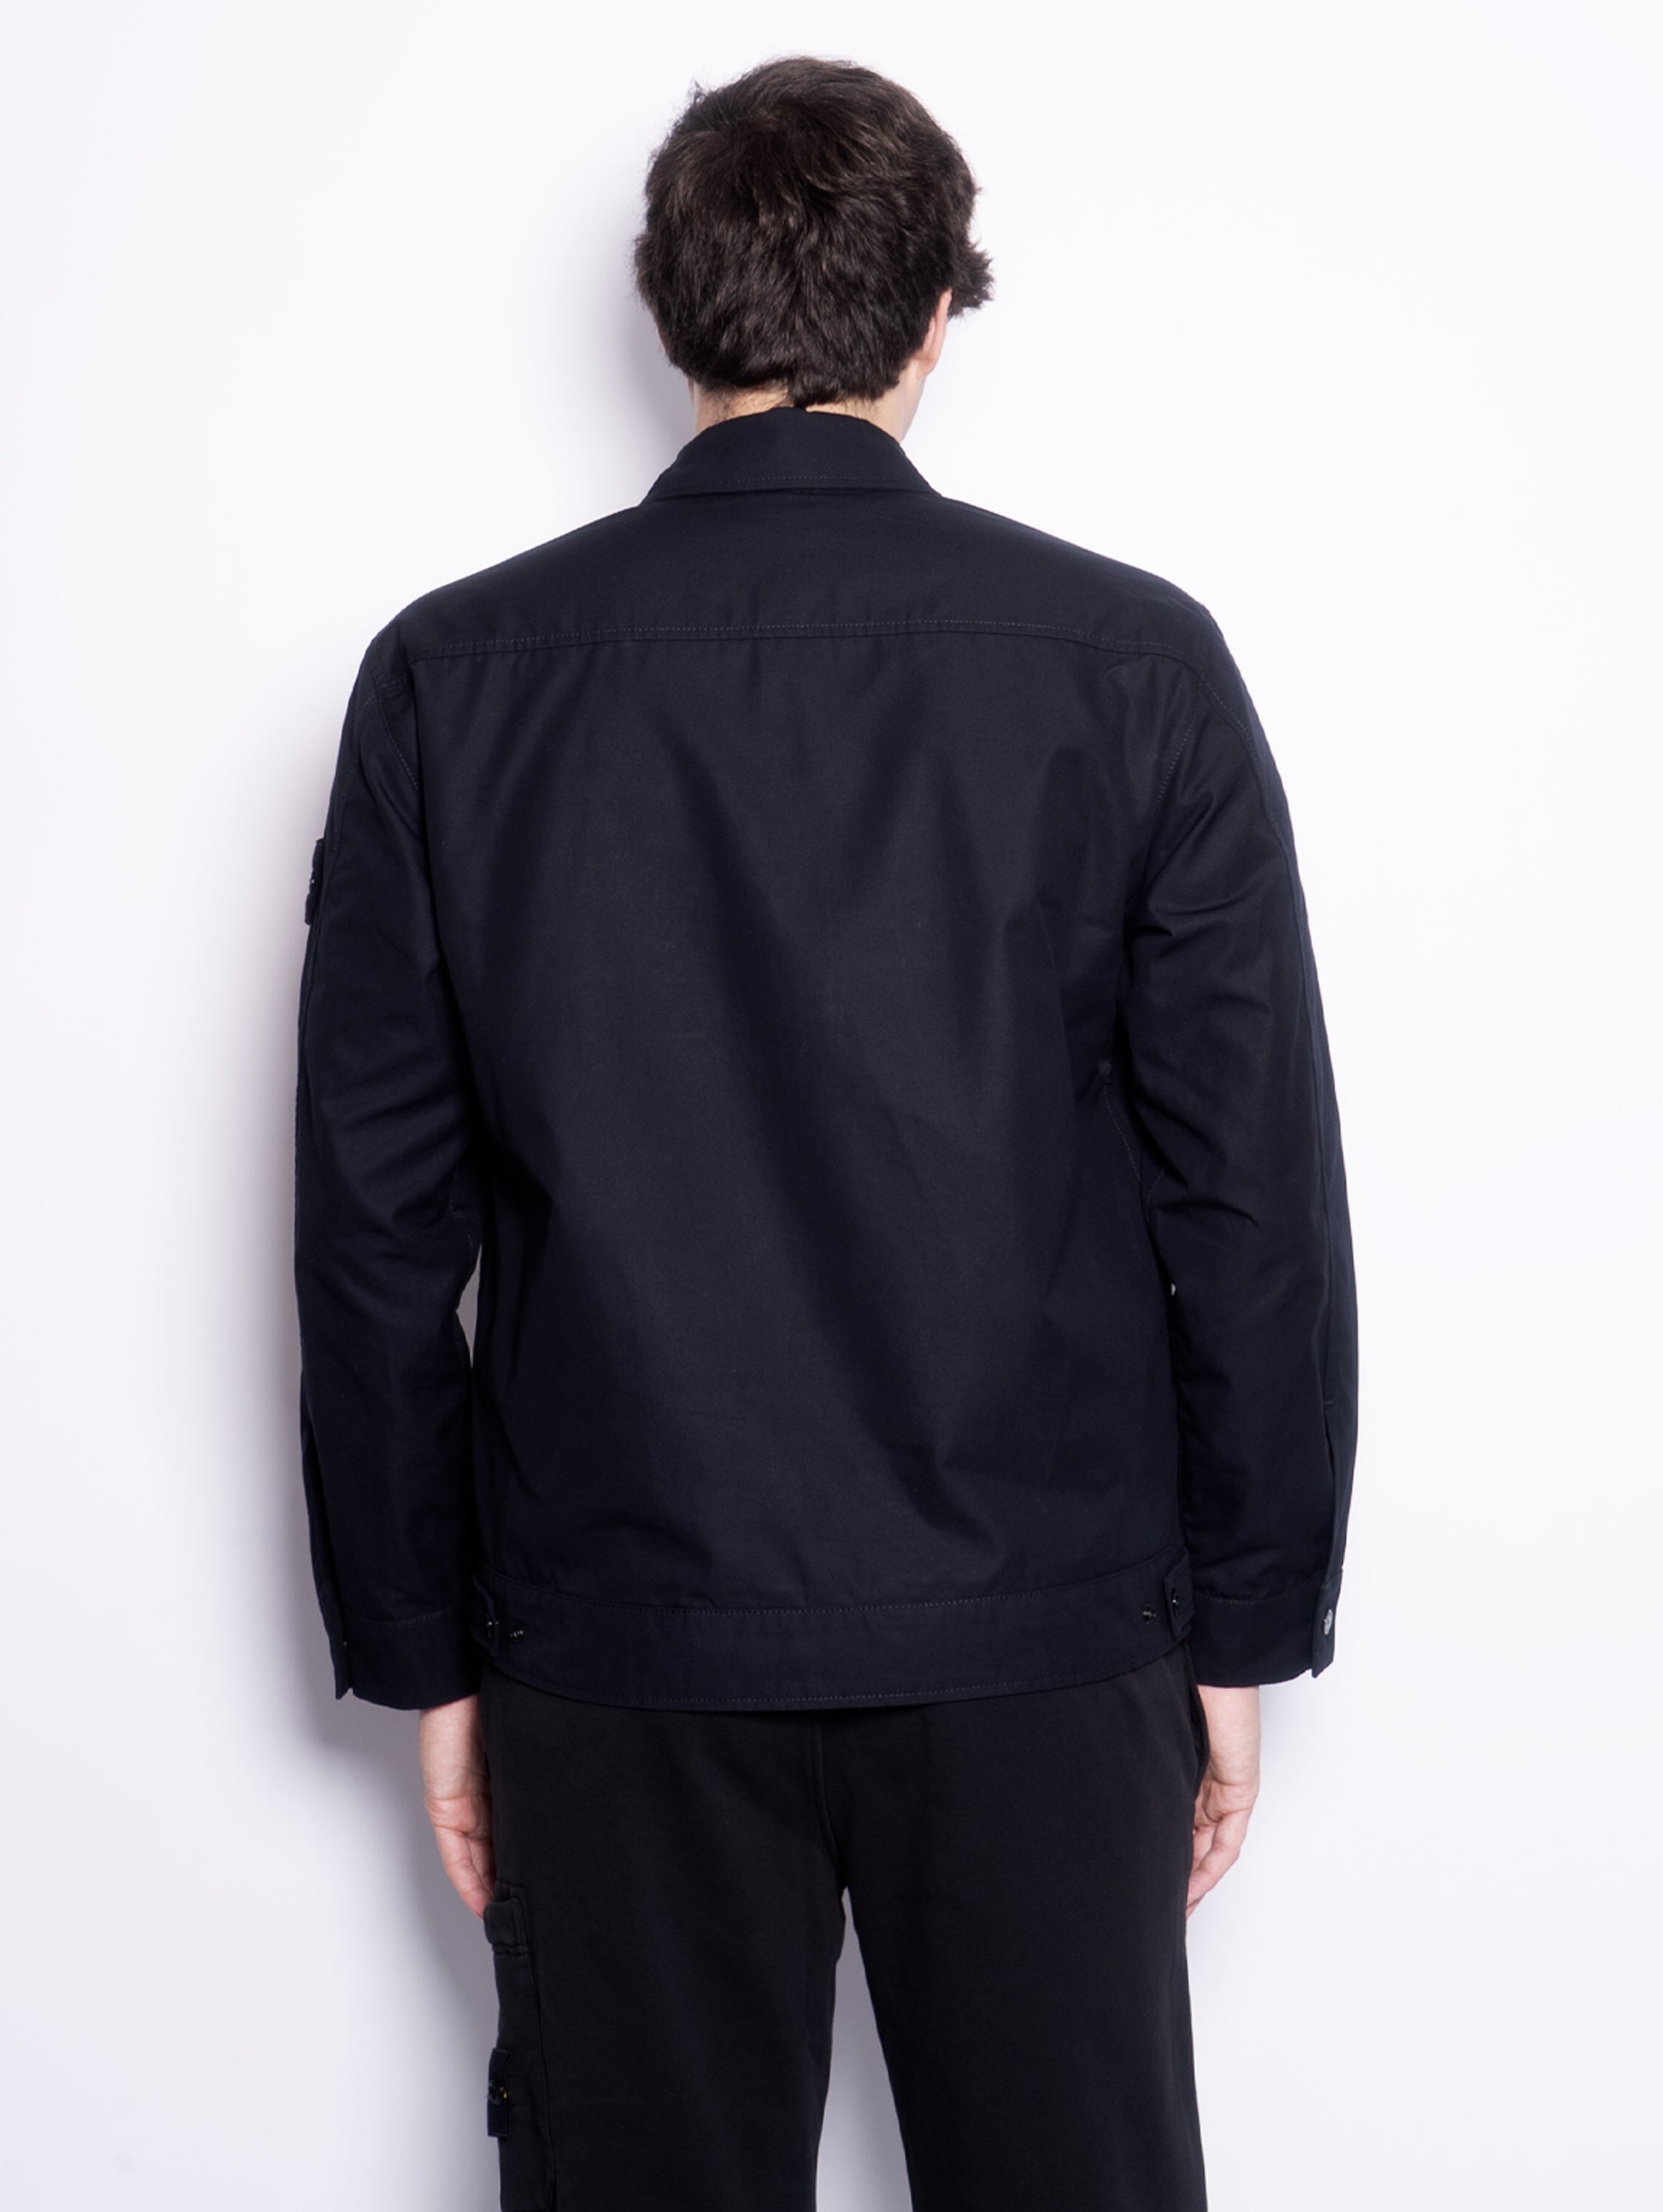 Ghost Piece-Jacke aus schwarzer Ventile-Baumwolle